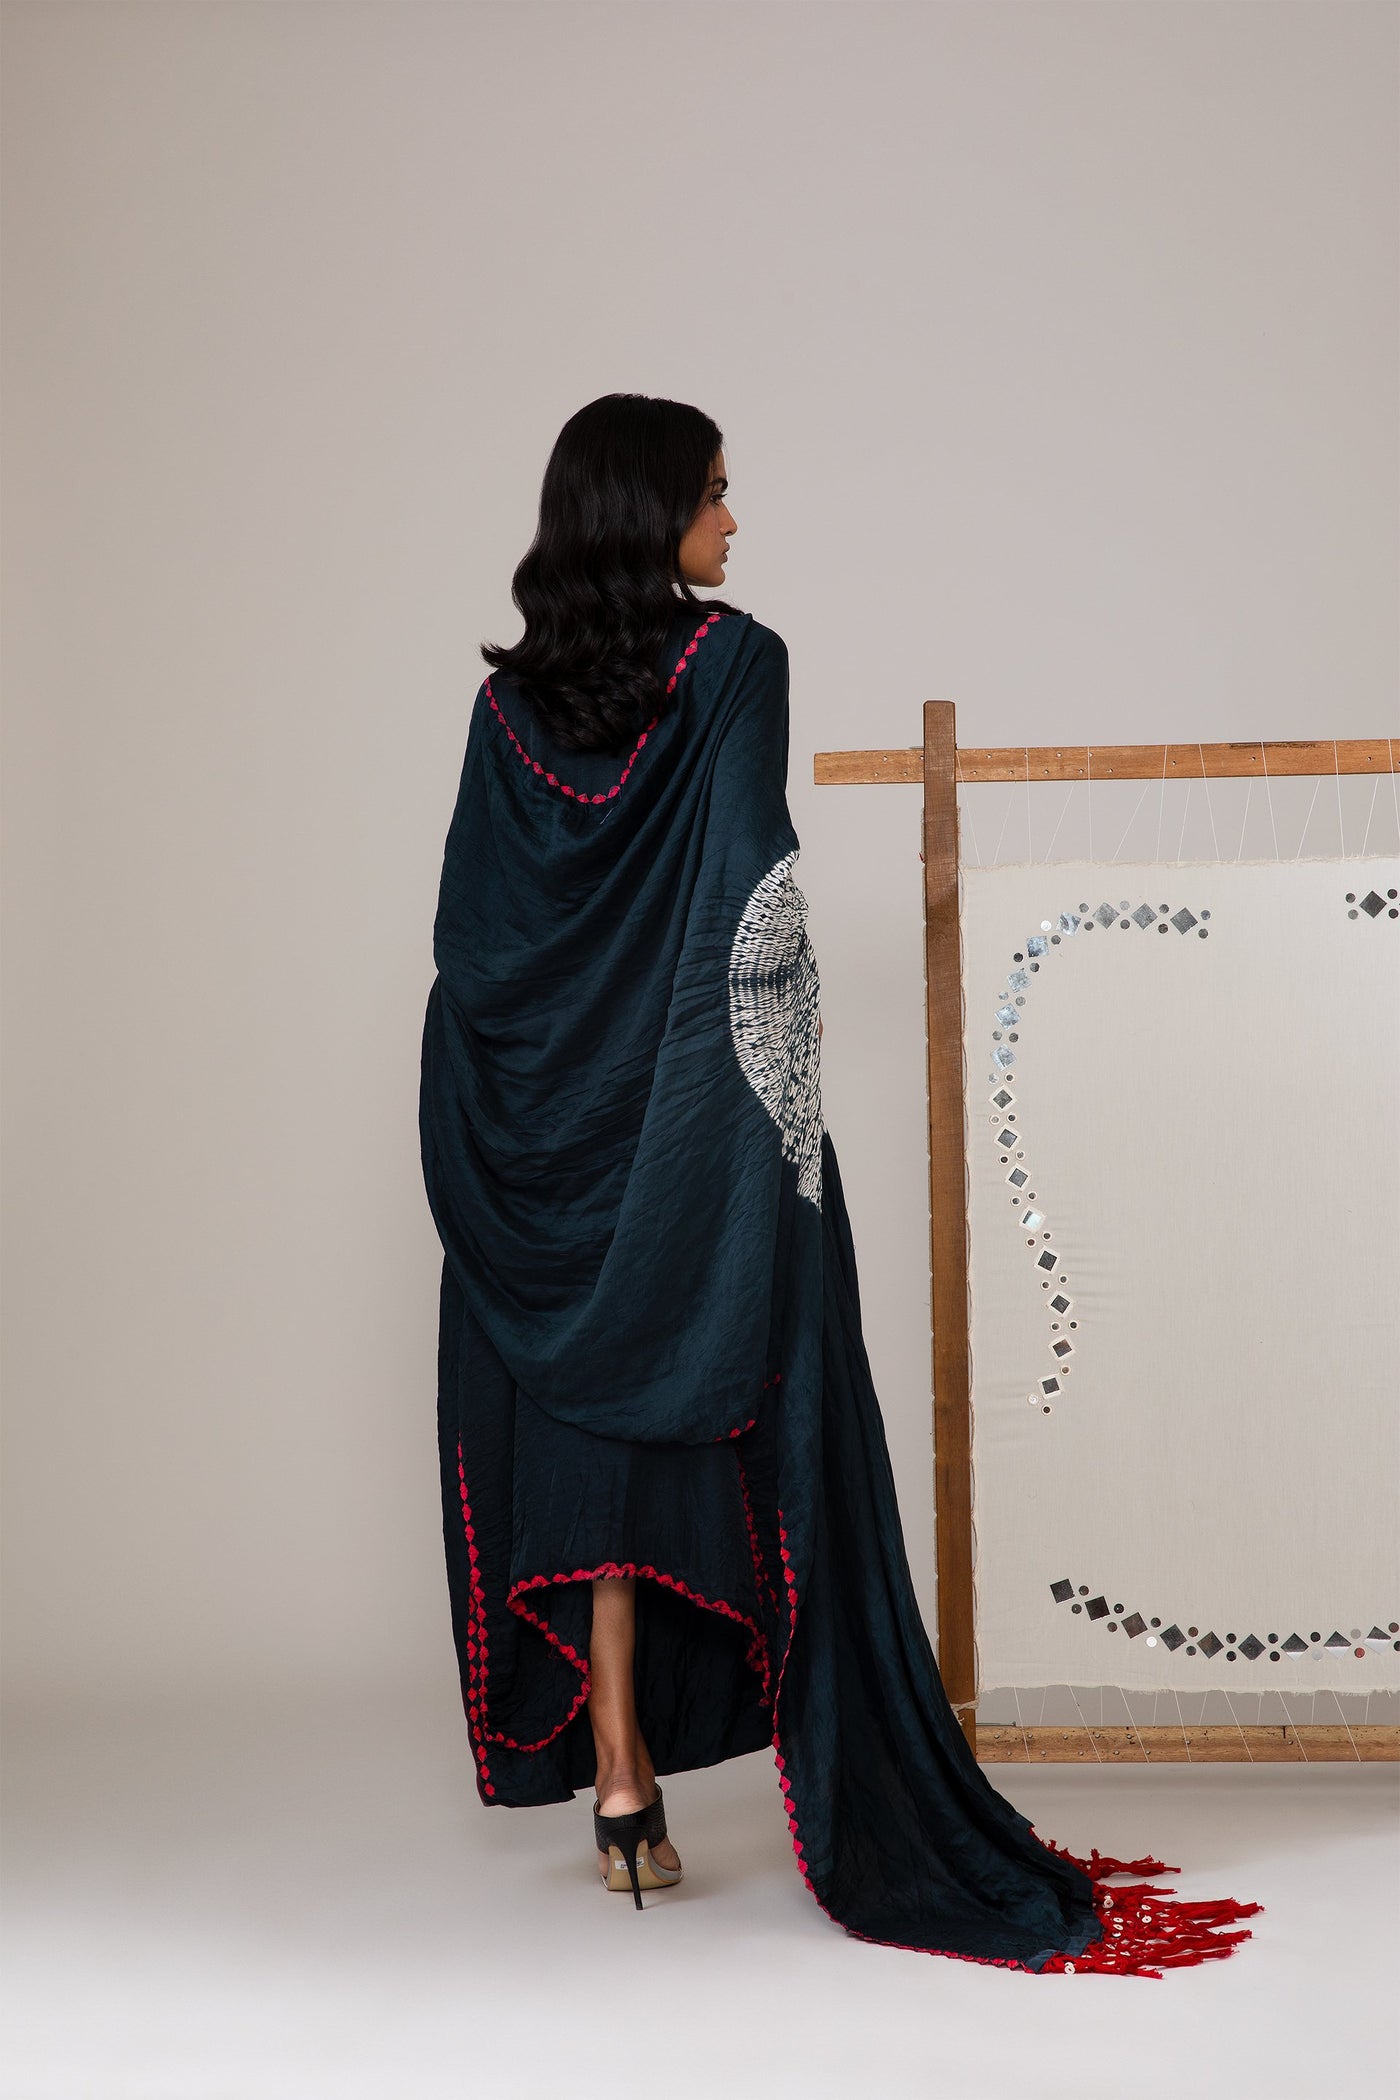 Shibori Bandhani drape with Mirrorwork Sleeves